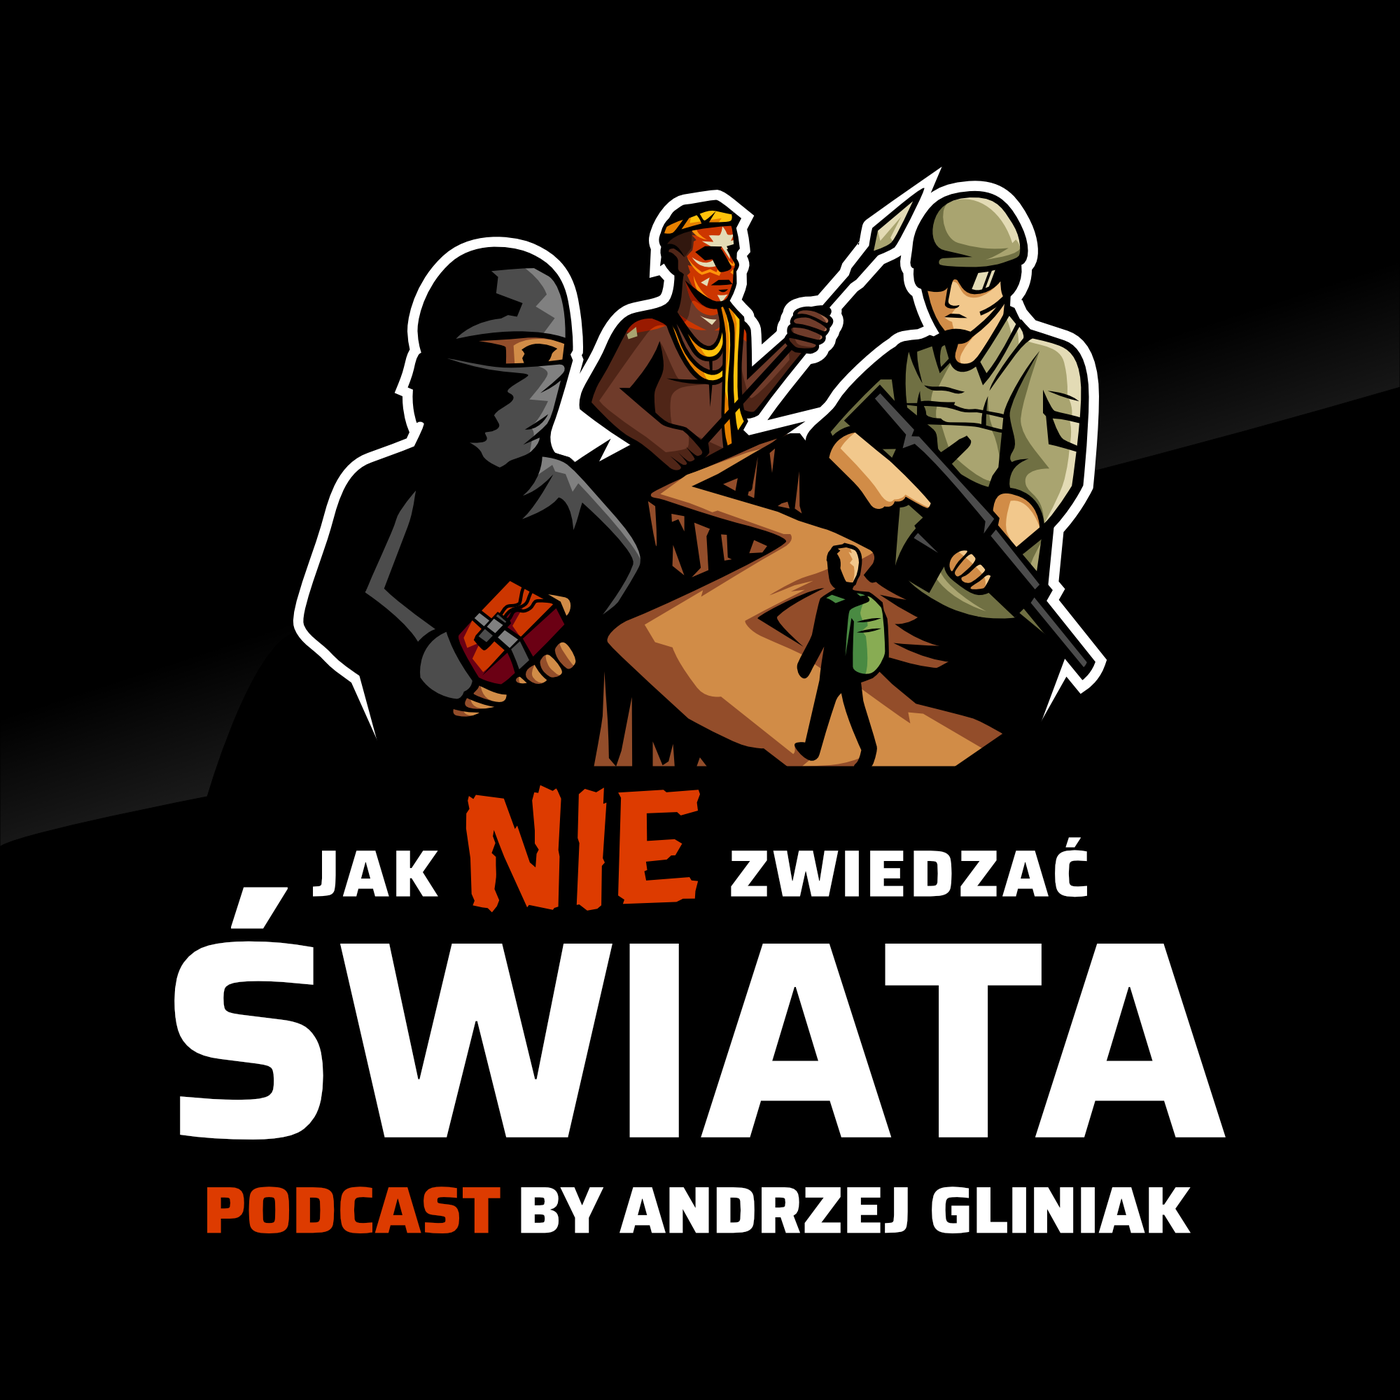 Jak NIE zwiedzać świata. Podcast by Andrzej Gliniak